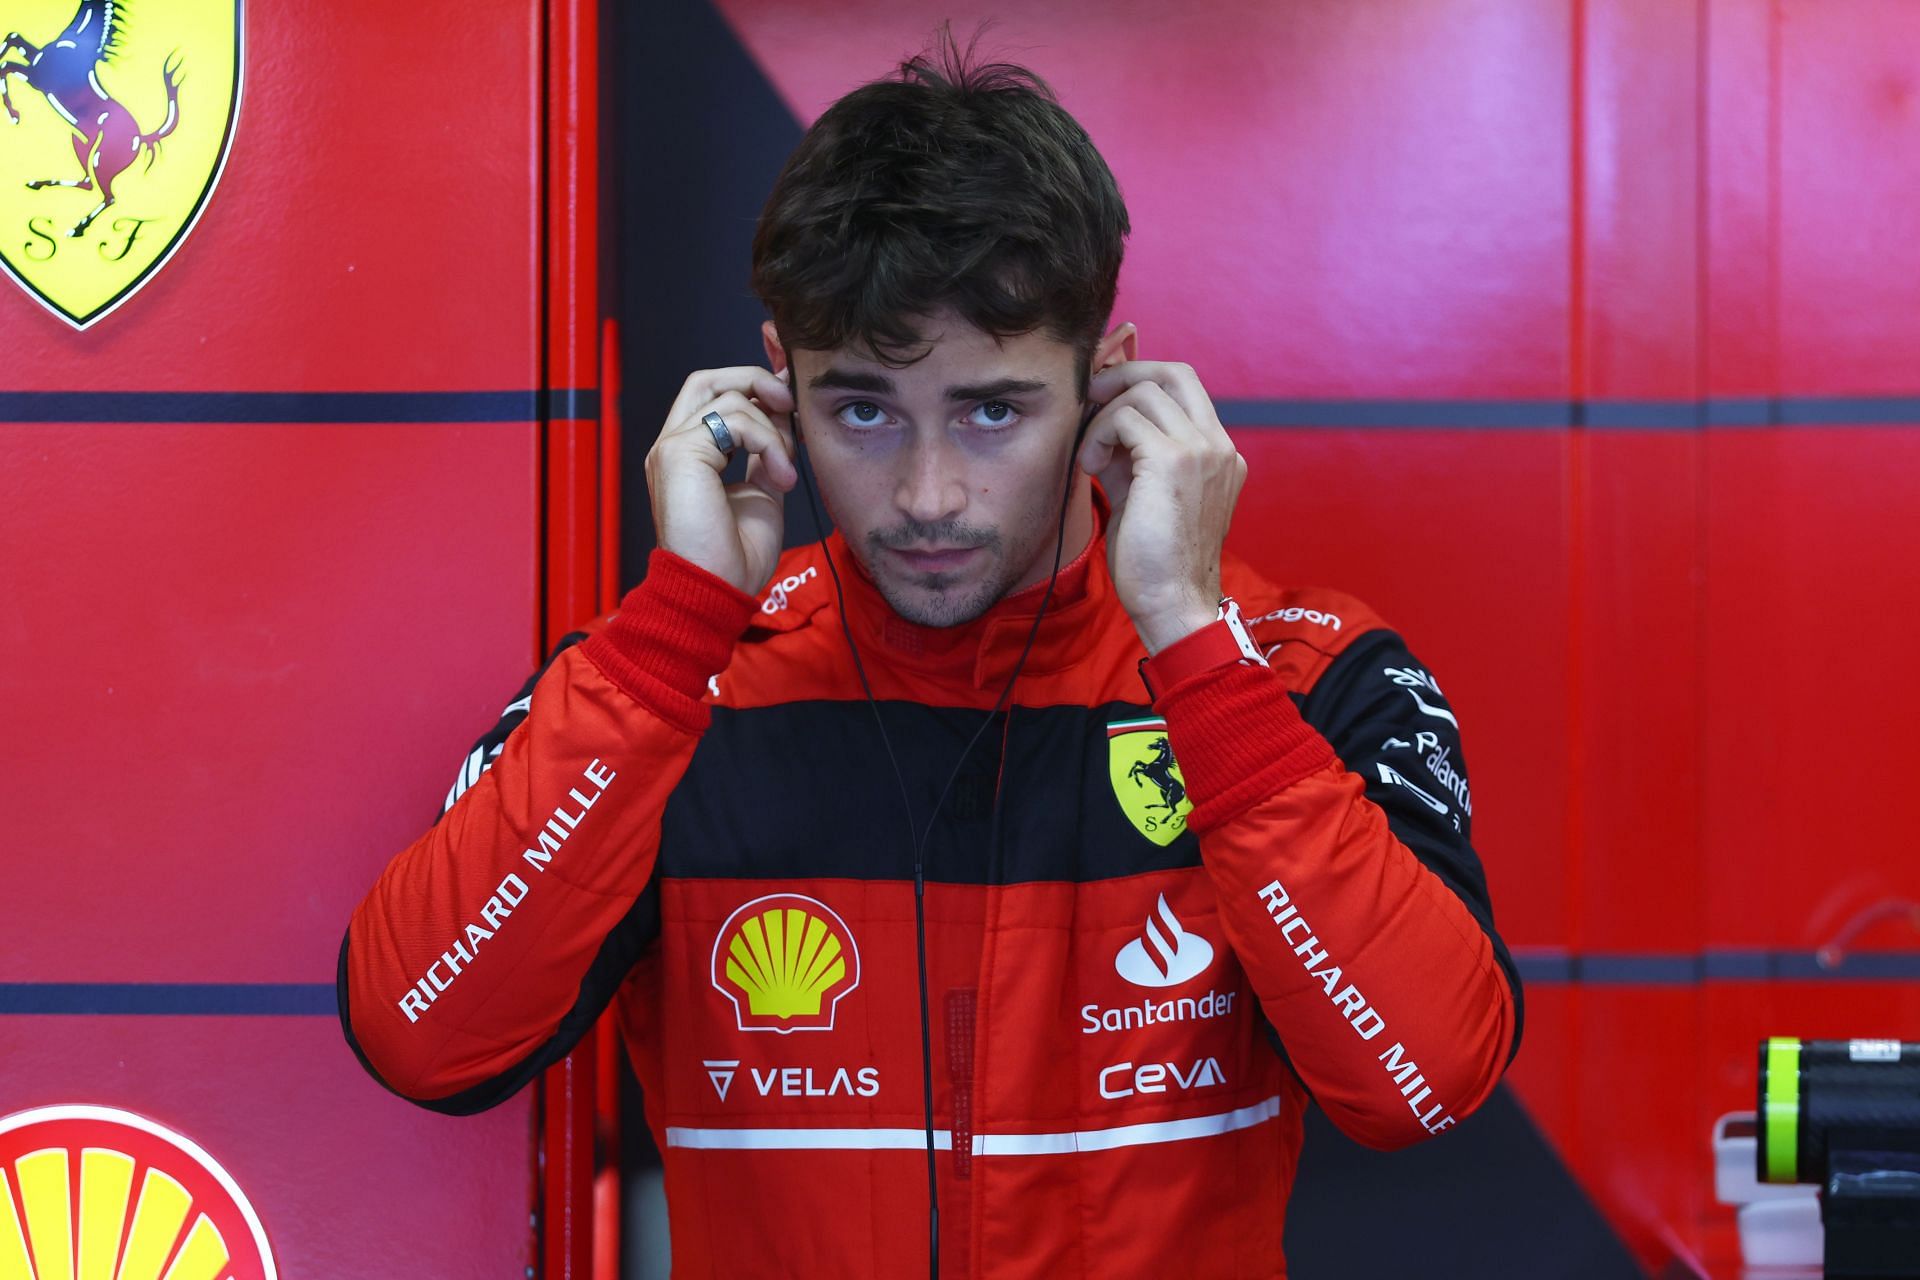 Charles Leclerc topped FP1 for Ferrari